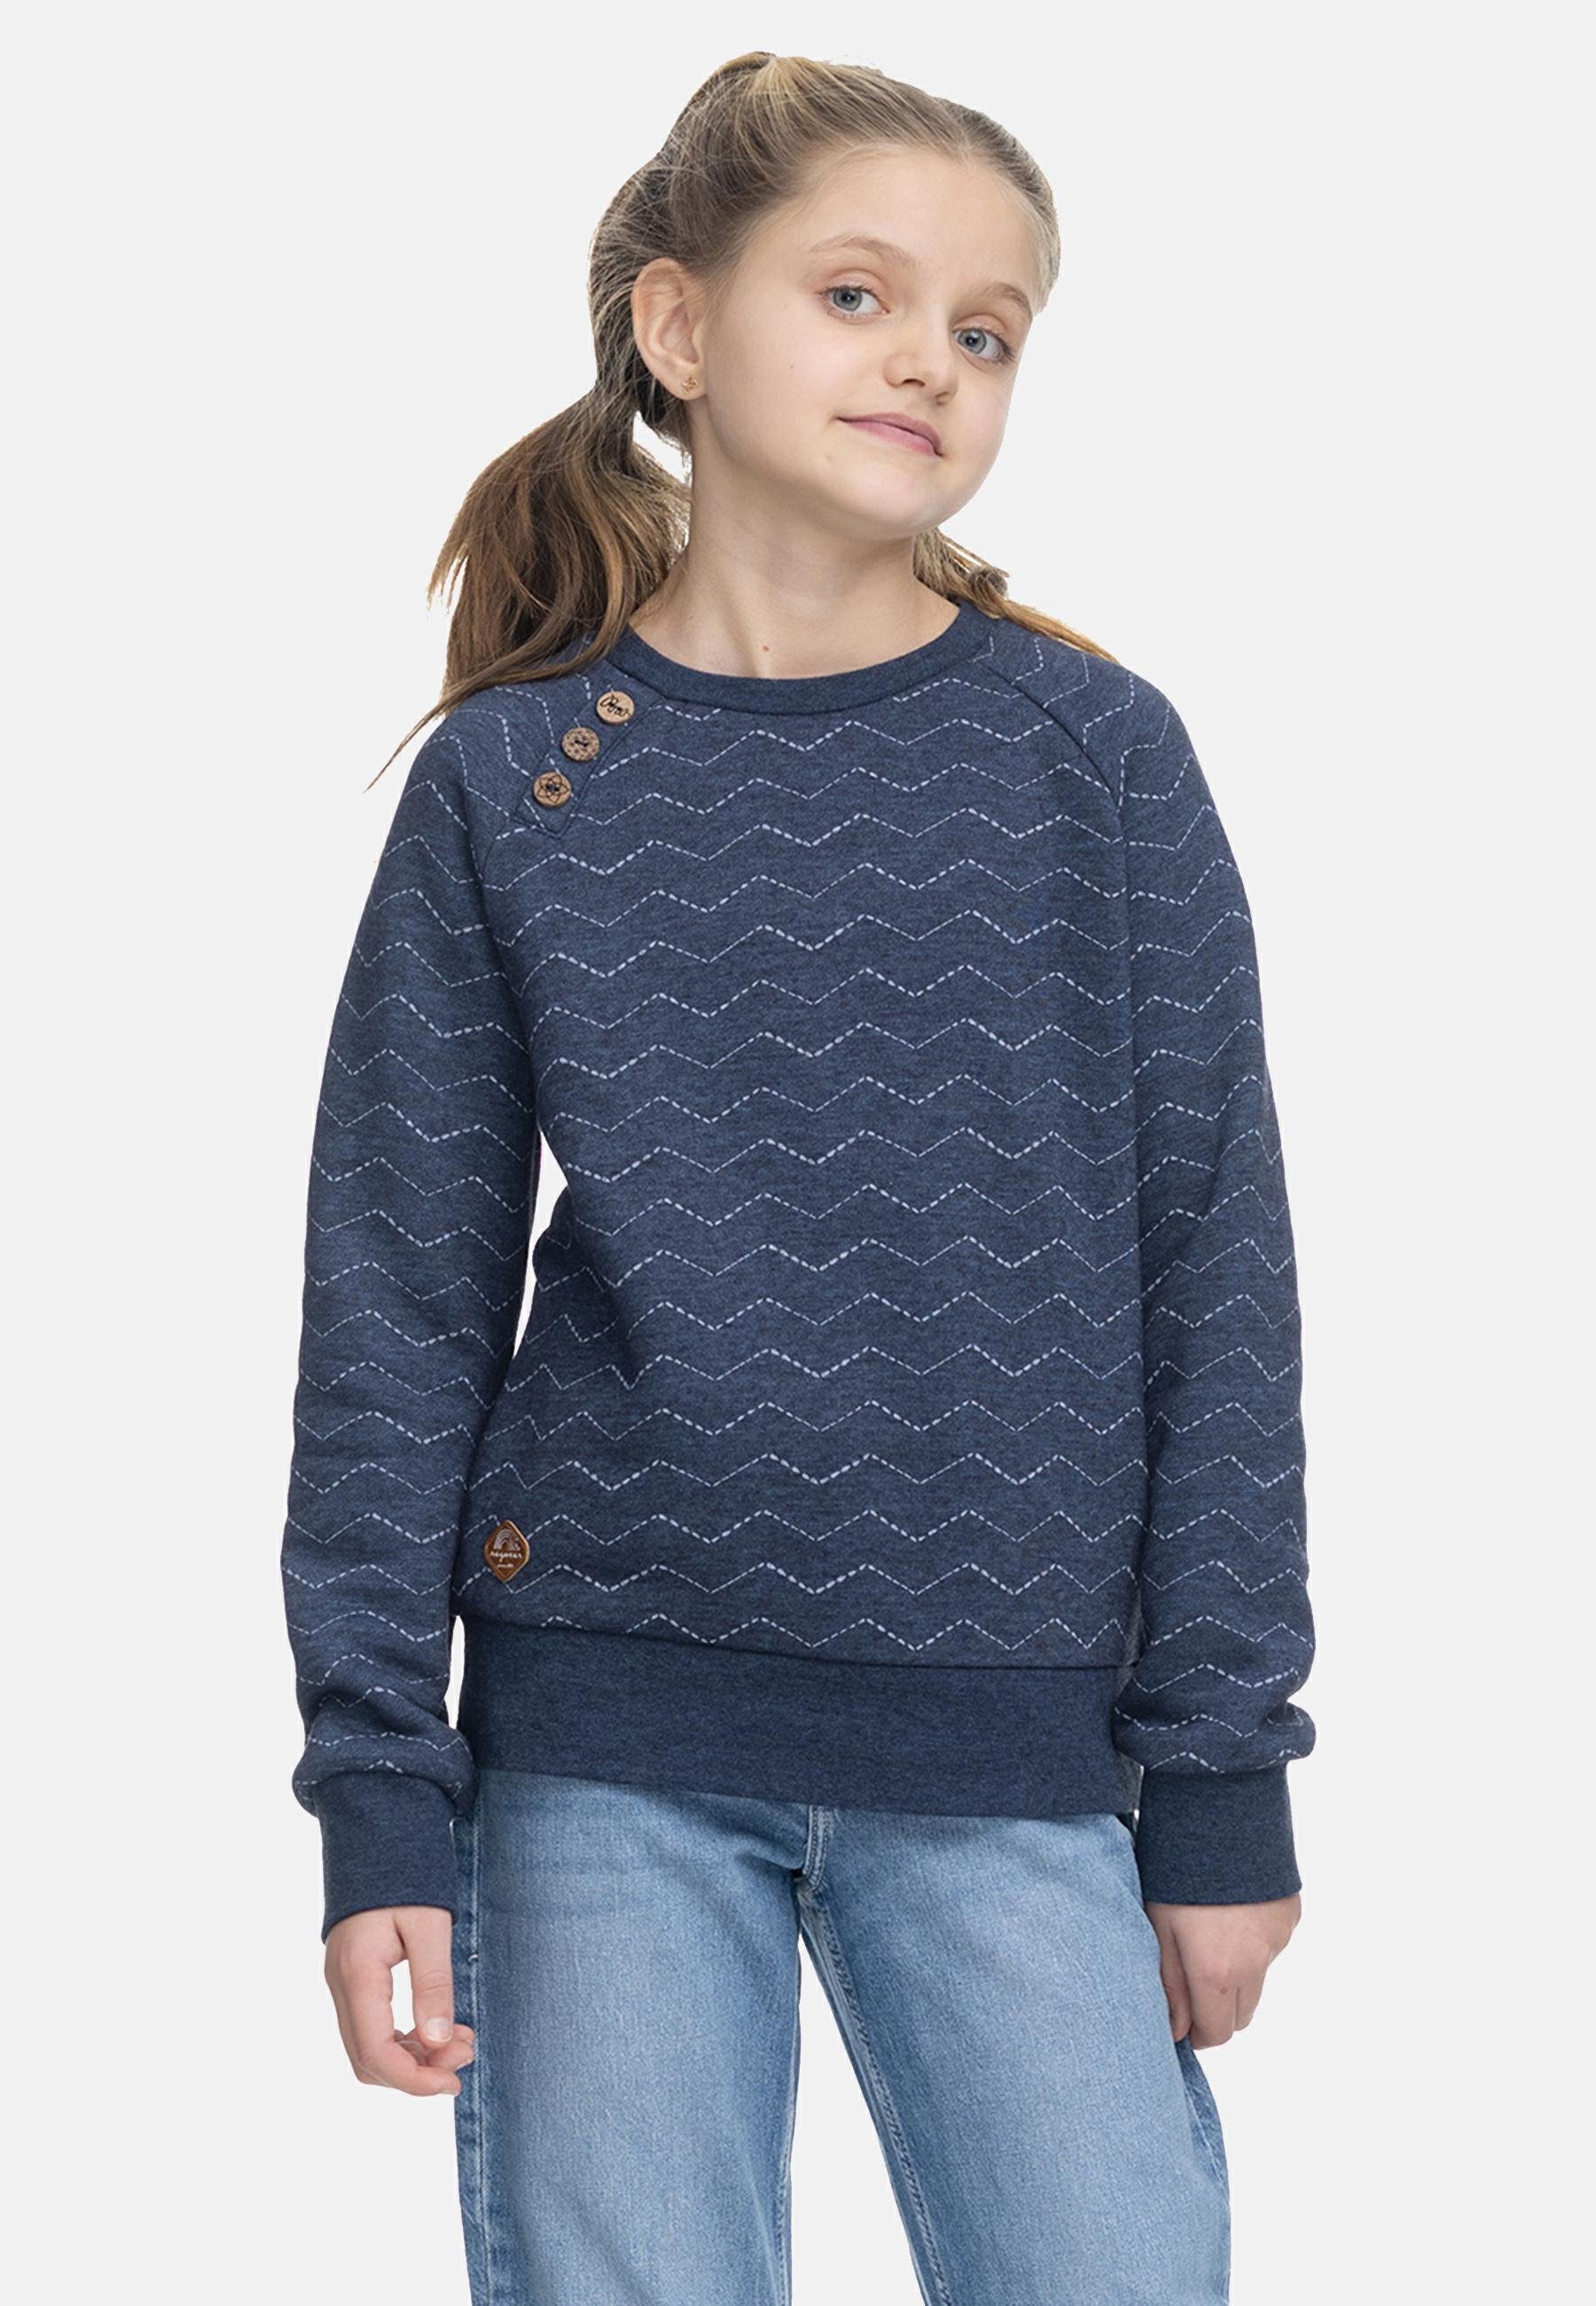 Sweater Ragwear Mädchen navy mit Sweatshirt Zig Zick-Zack-Muster stylisches Darinka Zag